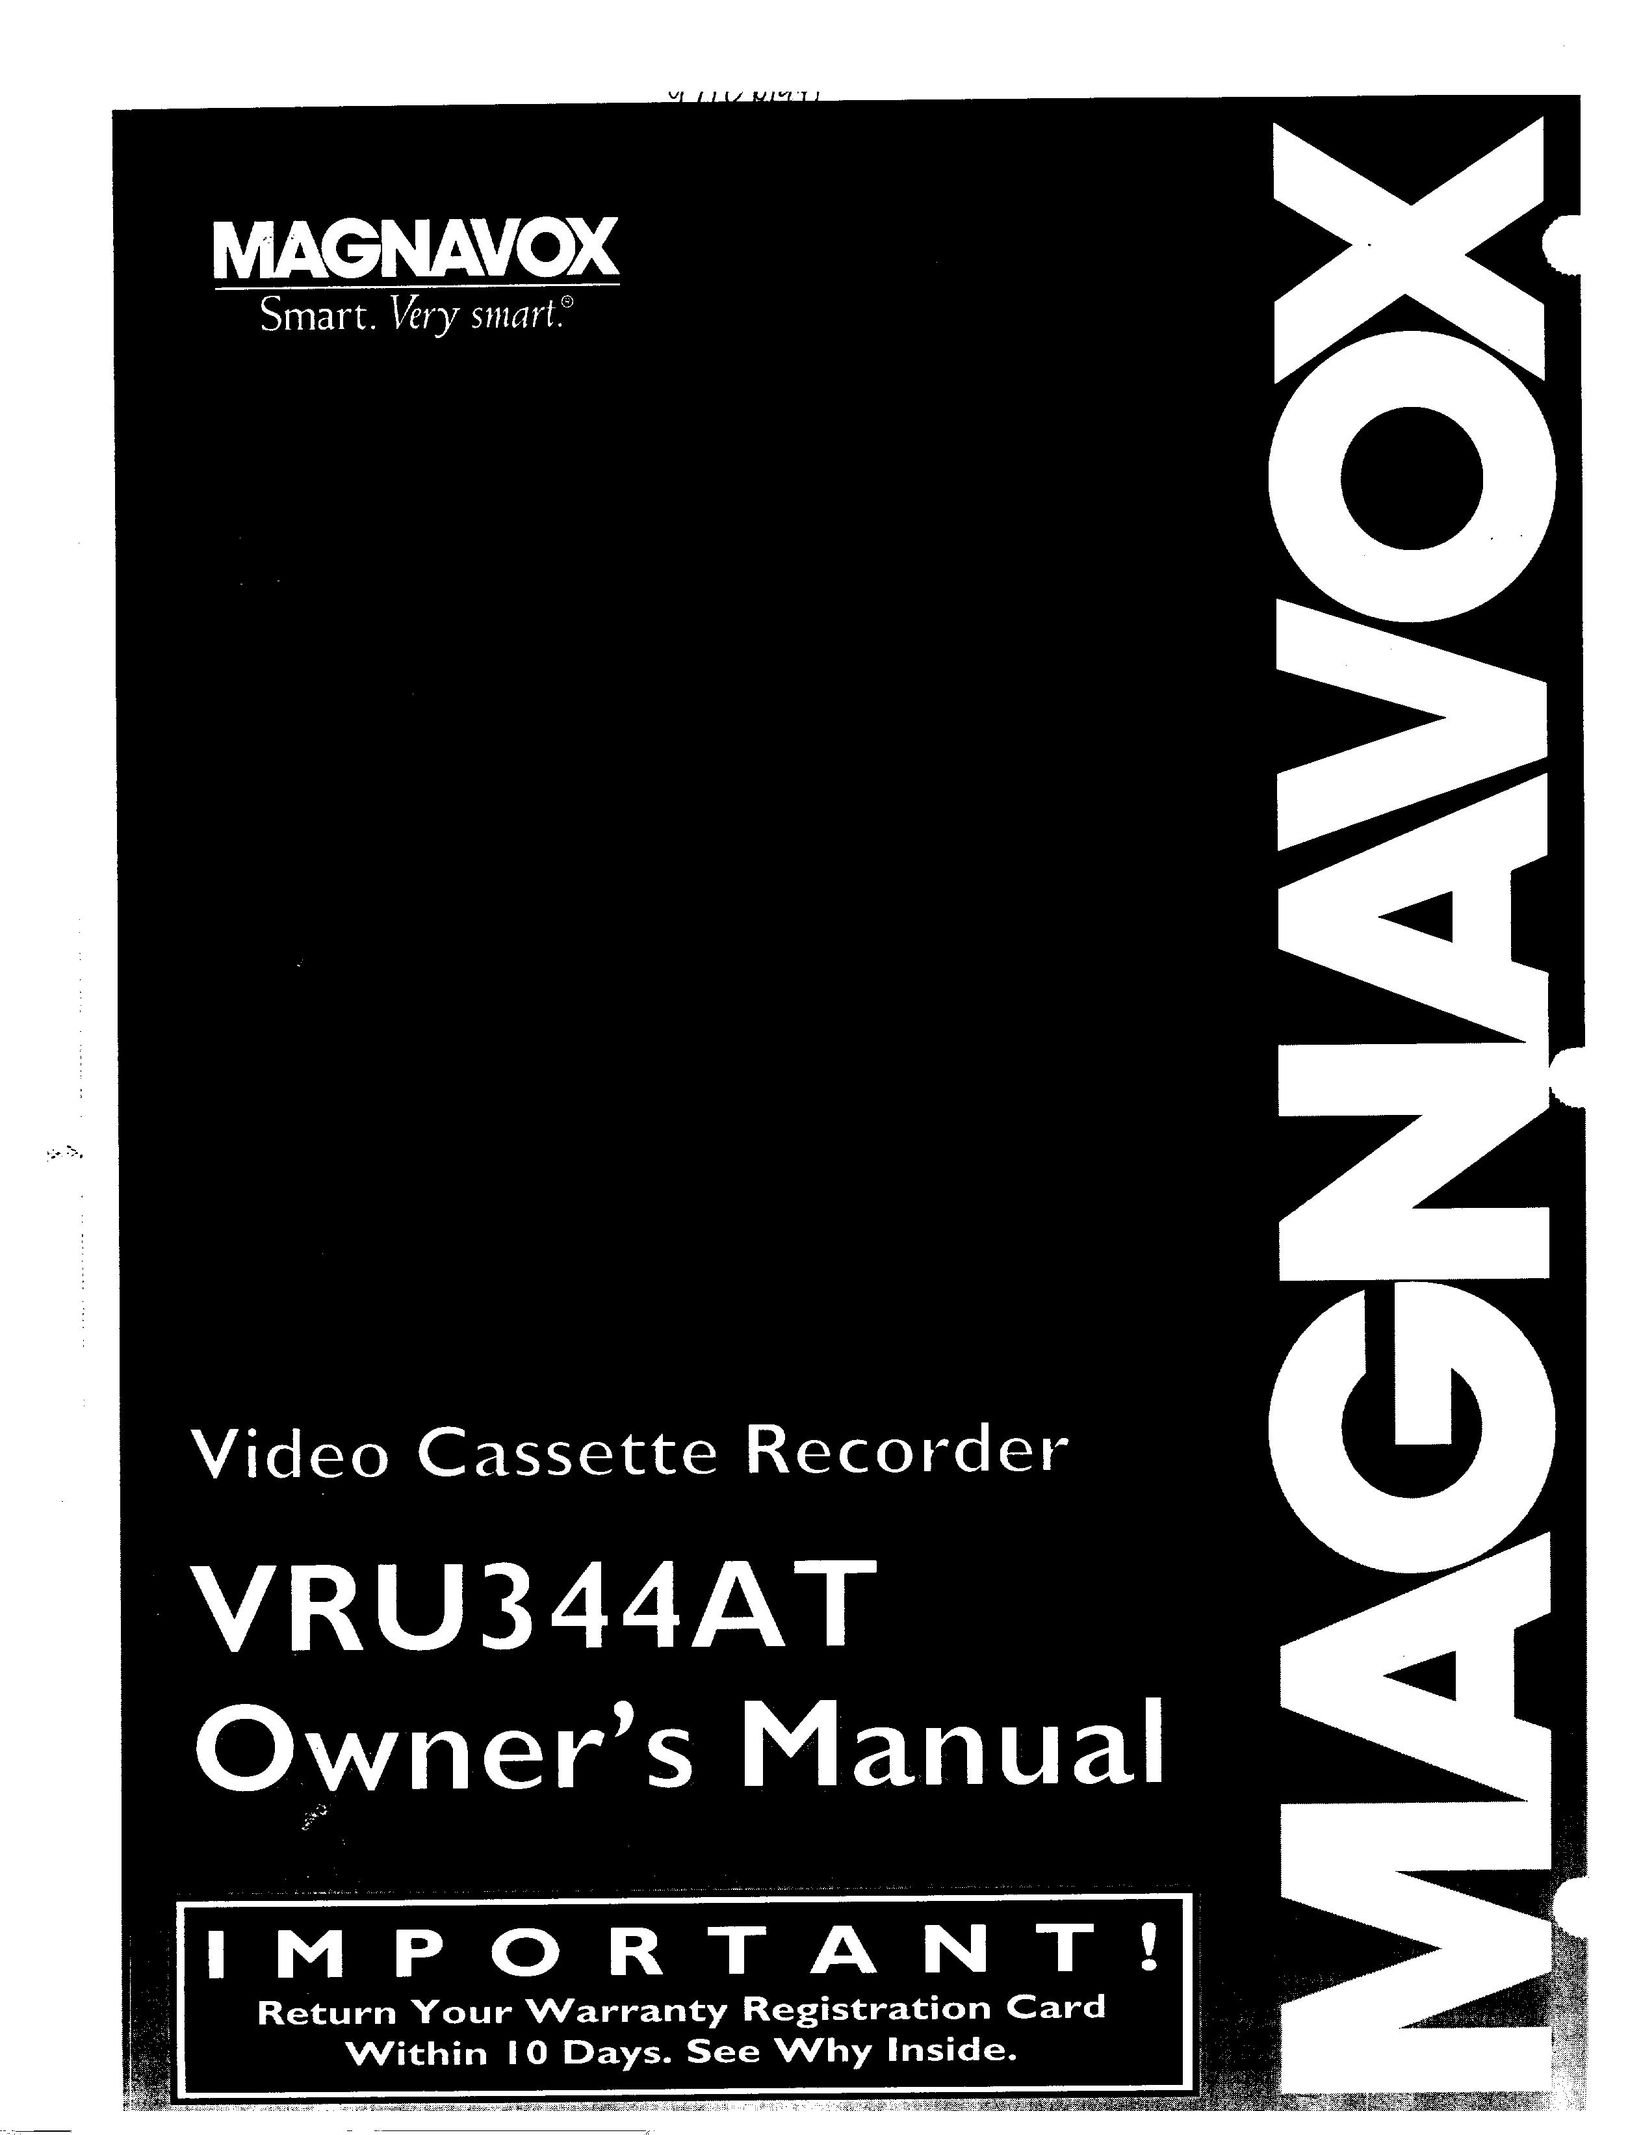 Magnavox VRU344AT VCR User Manual